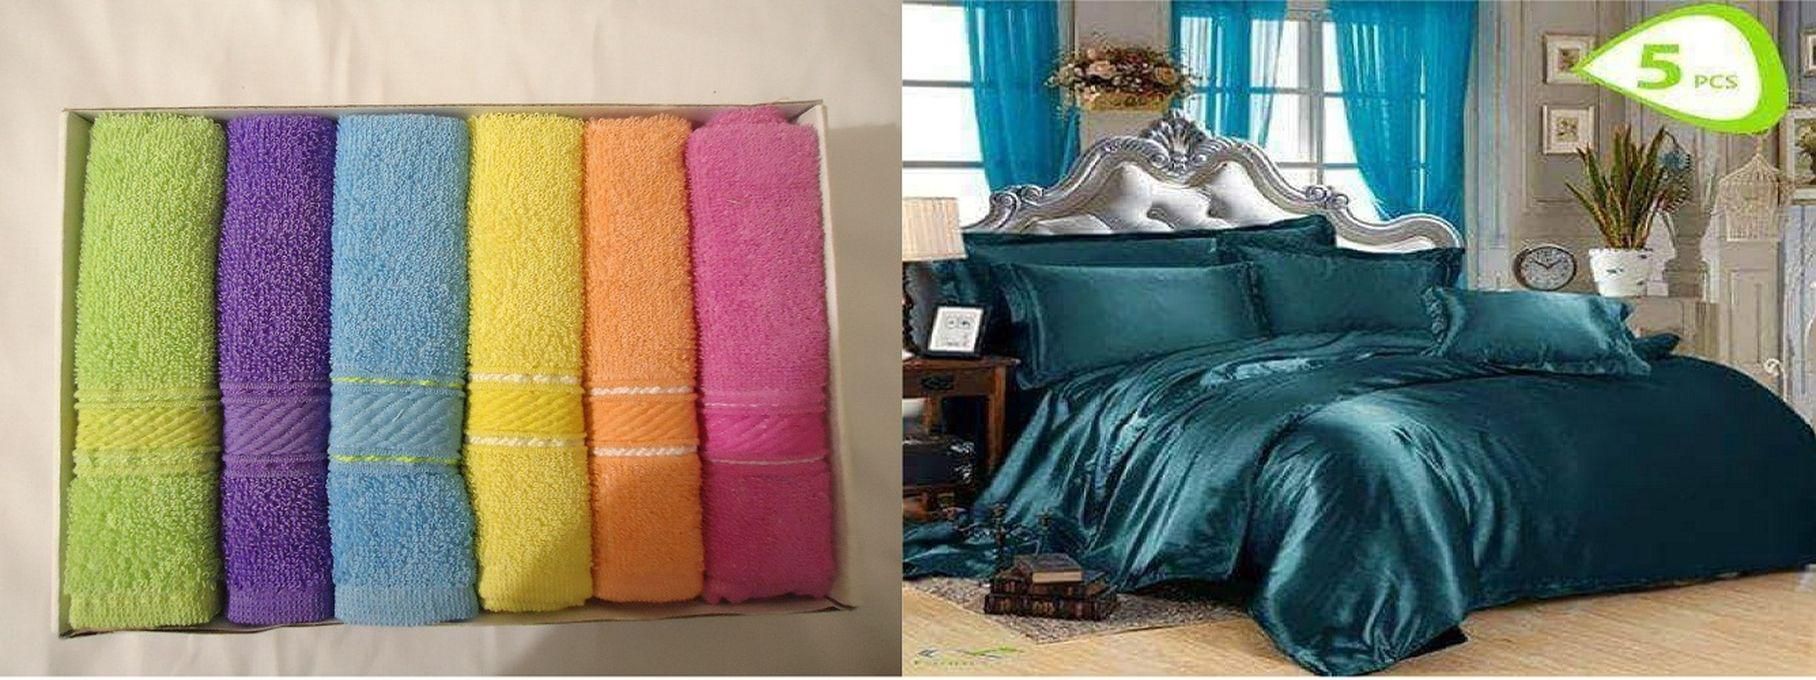 Satin Bed Sheet Set - 5 Pcs - Turquoise + Cotton Towels - 6 Pcs - 30*30 Cm